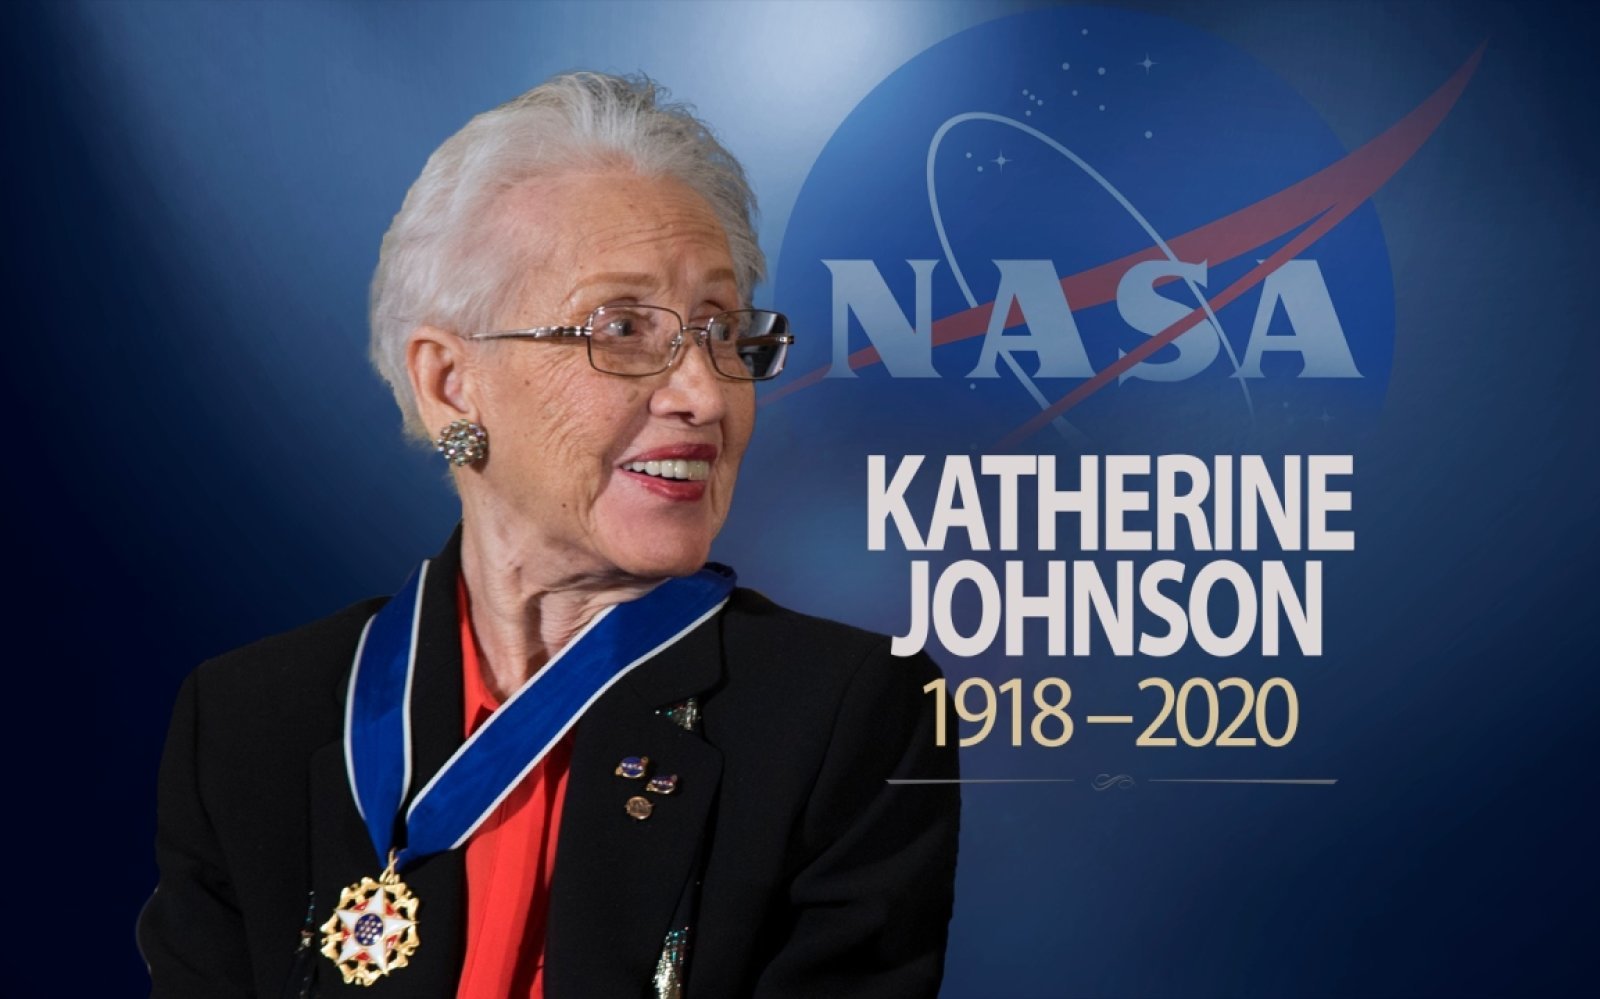 Про женщину в наса. Катерина Джонсон НАСА. Кэтрин Джонсон математик НАСА. Кэтрин Глобал НАСА. Кэтрин Джонсон (род. В 1918).